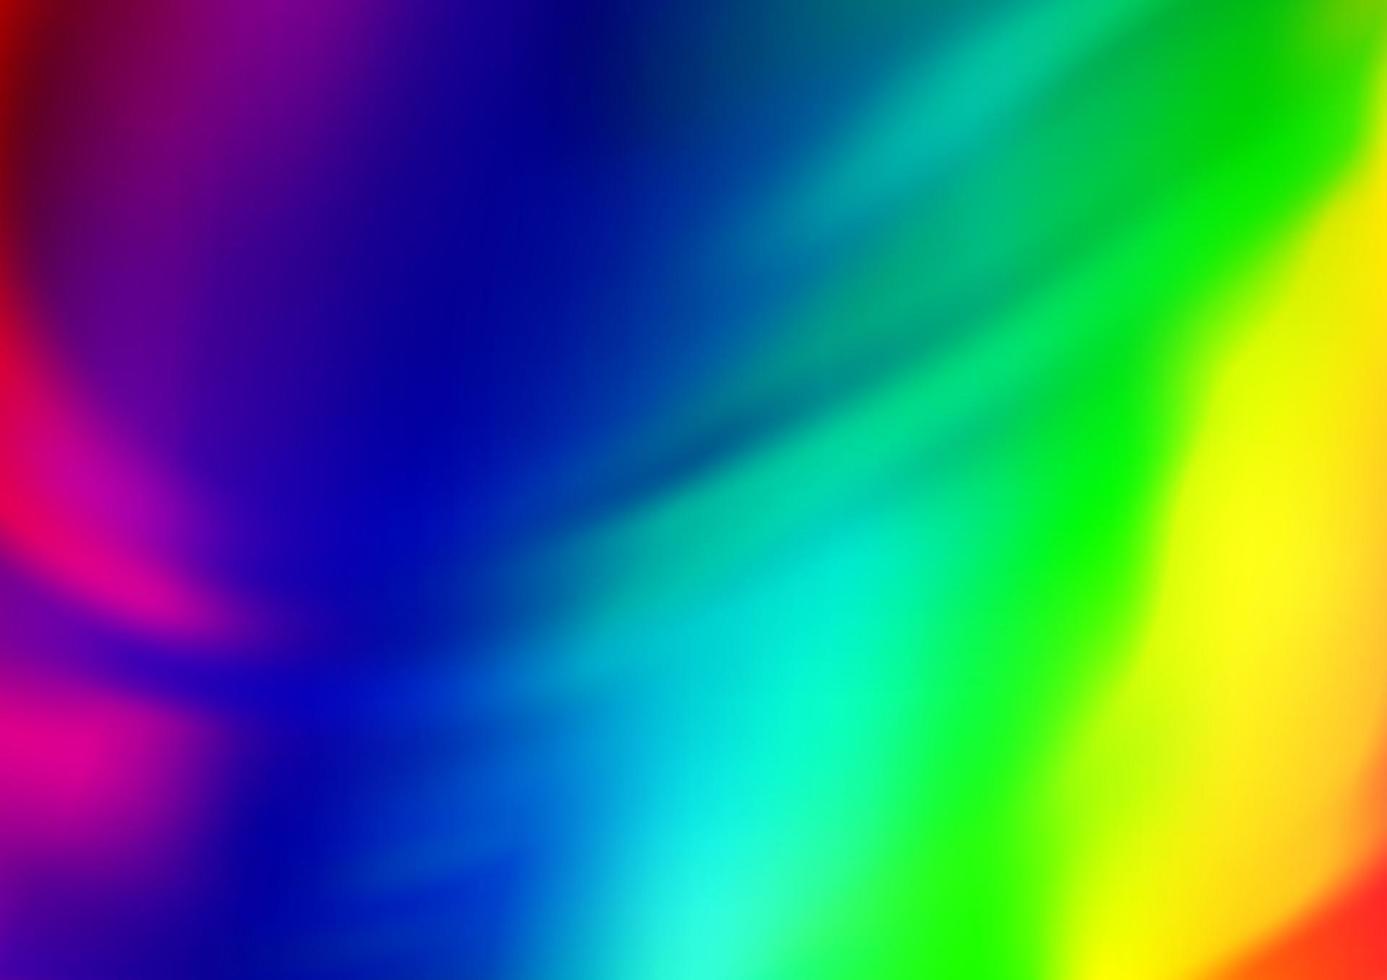 ljus mångfärgad, regnbåge vektor abstrakt mall.